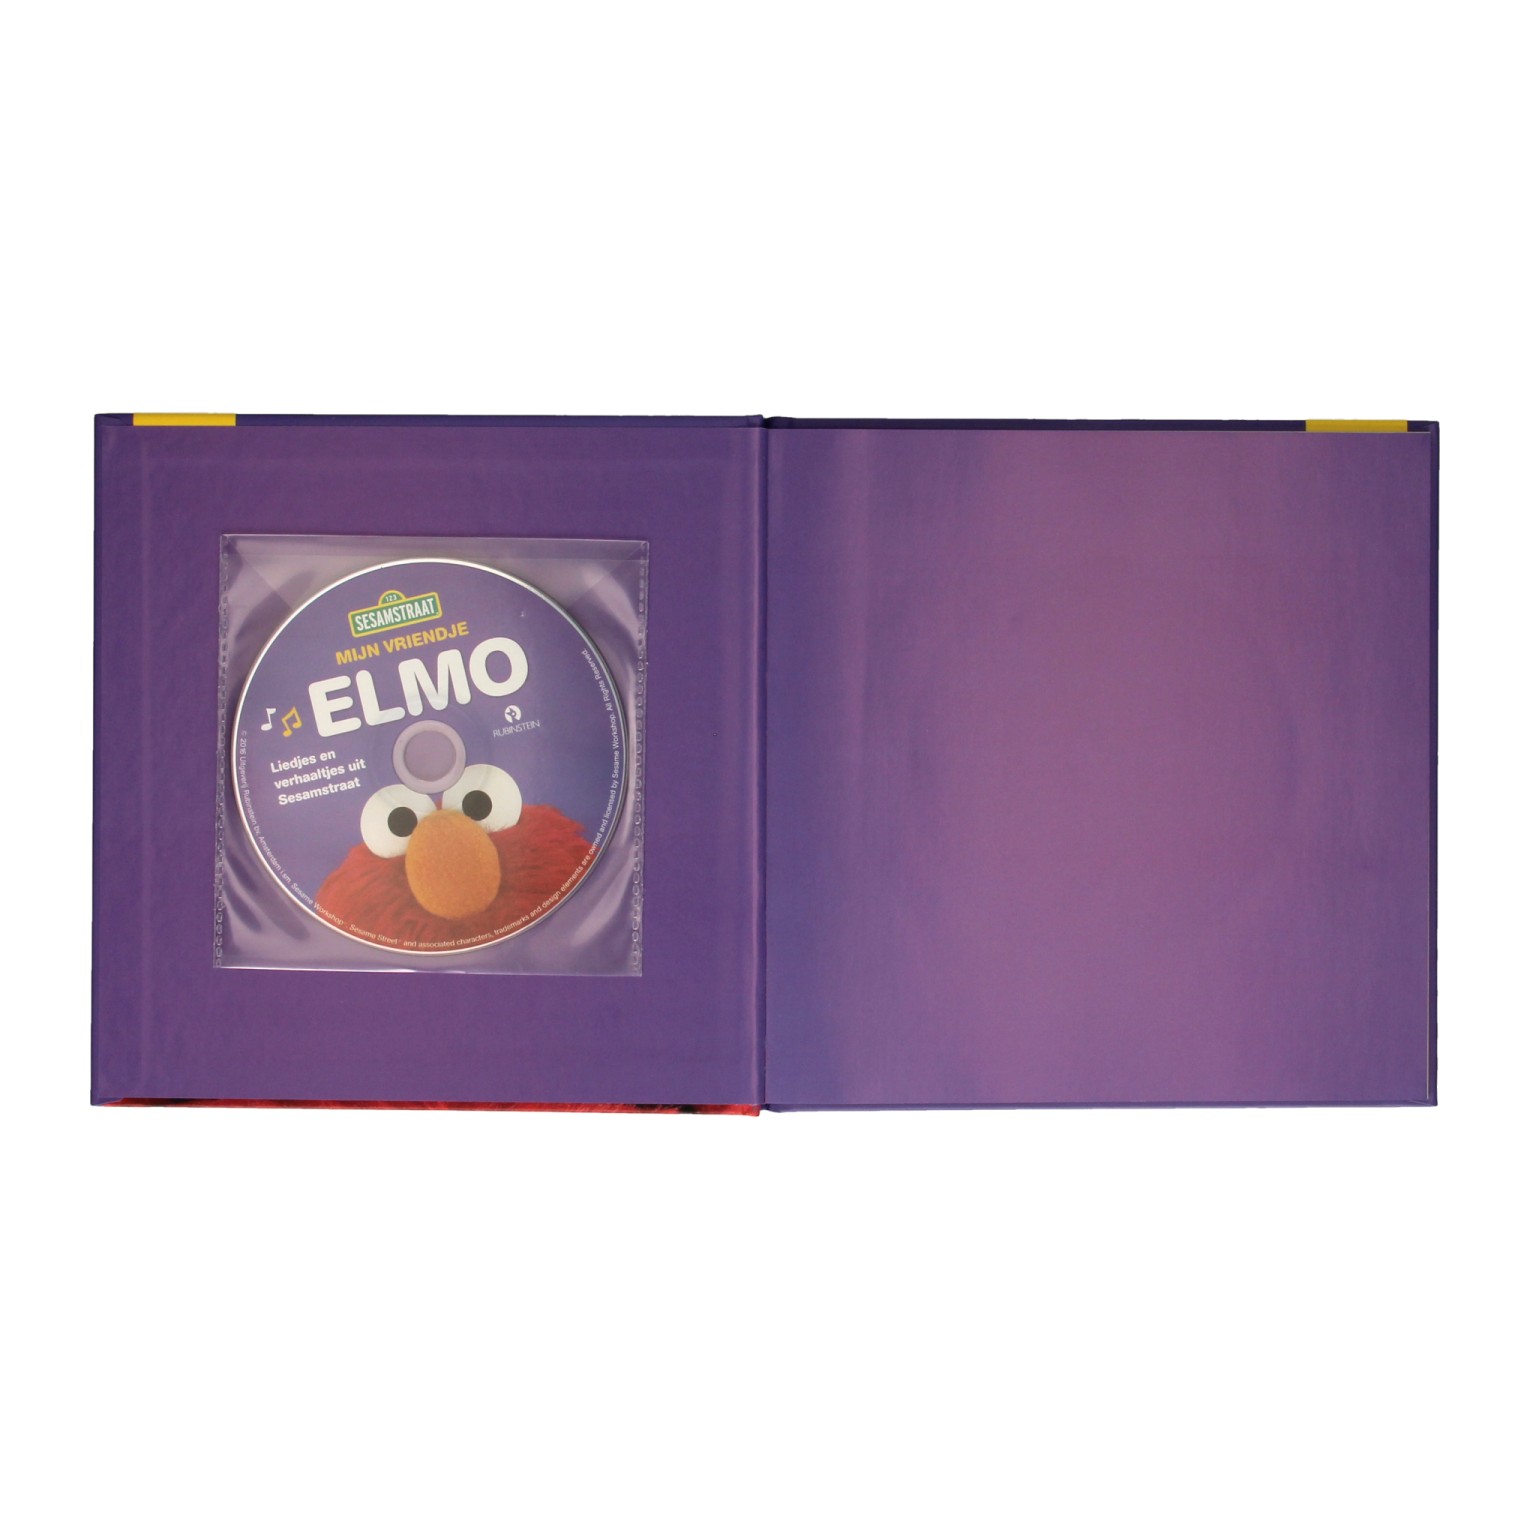 Mijn Vriendje Elmo - Boek en CD